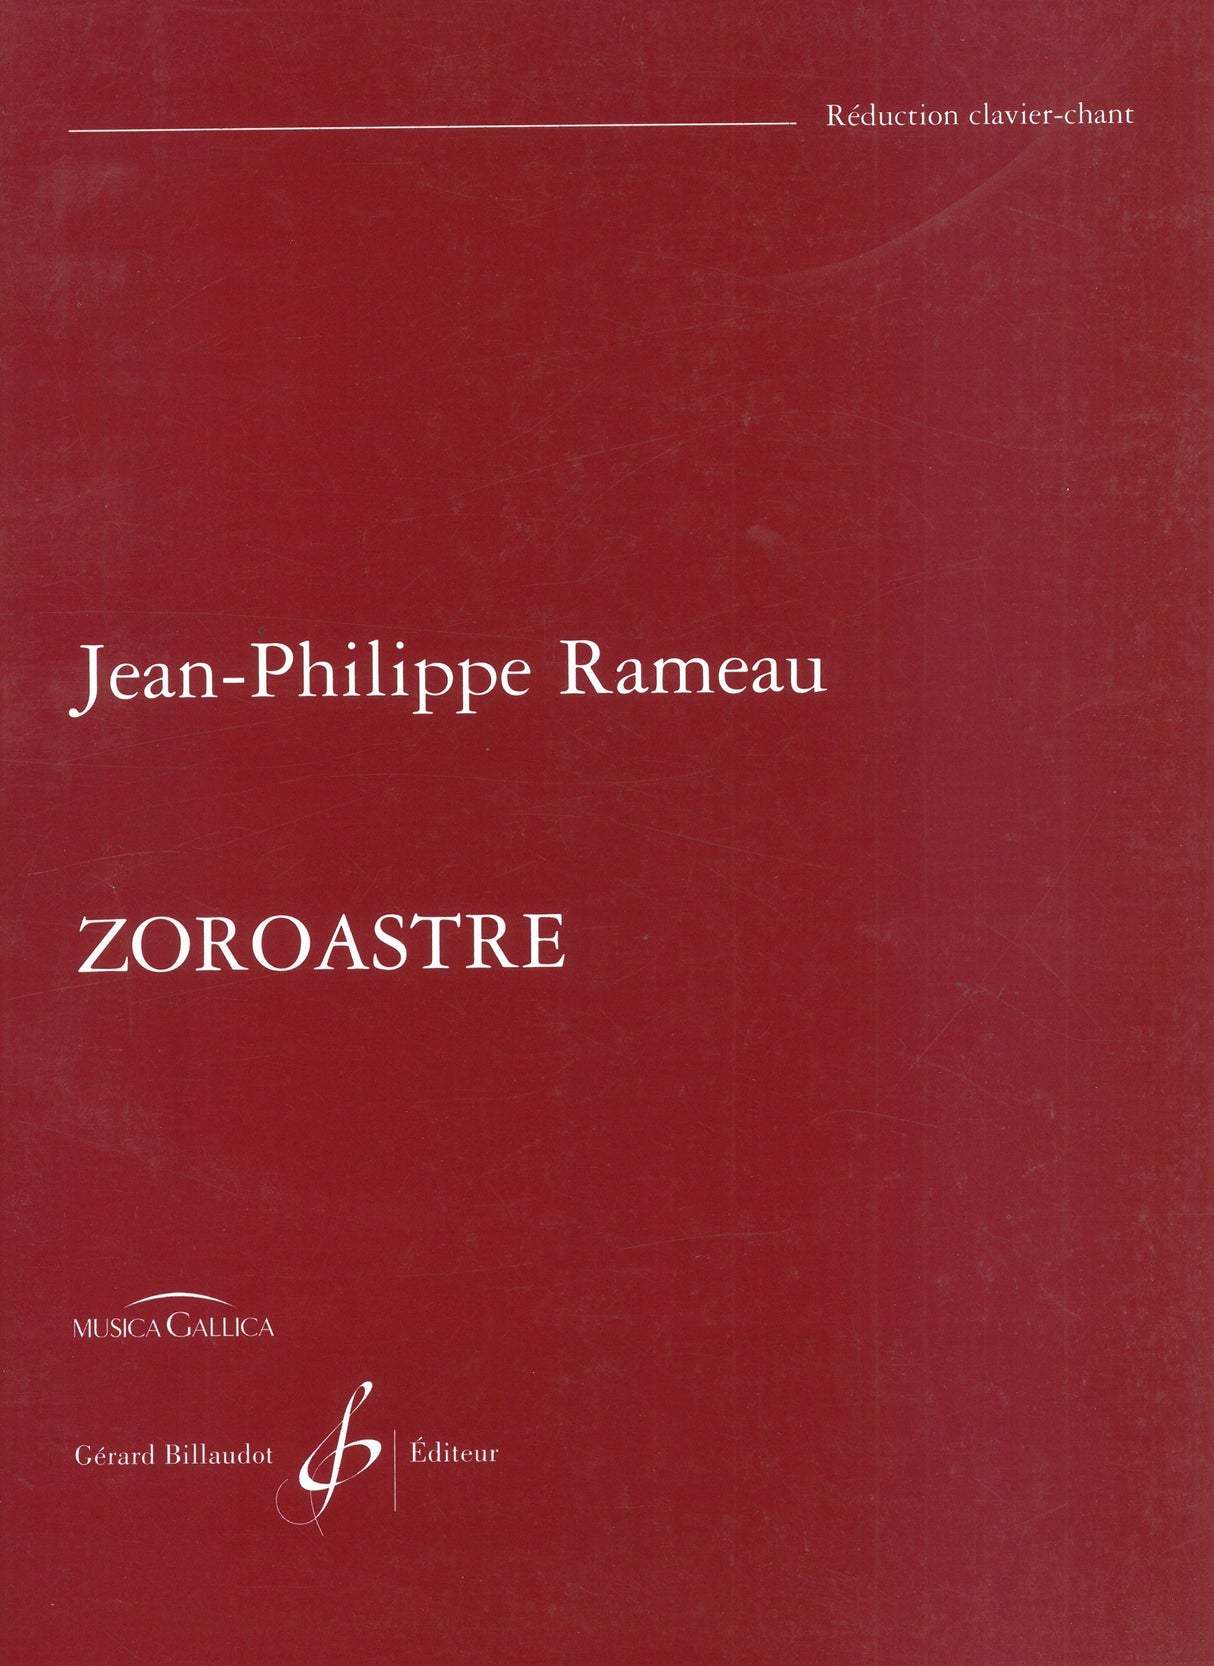 Rameau: Zoroastre, RCT 62